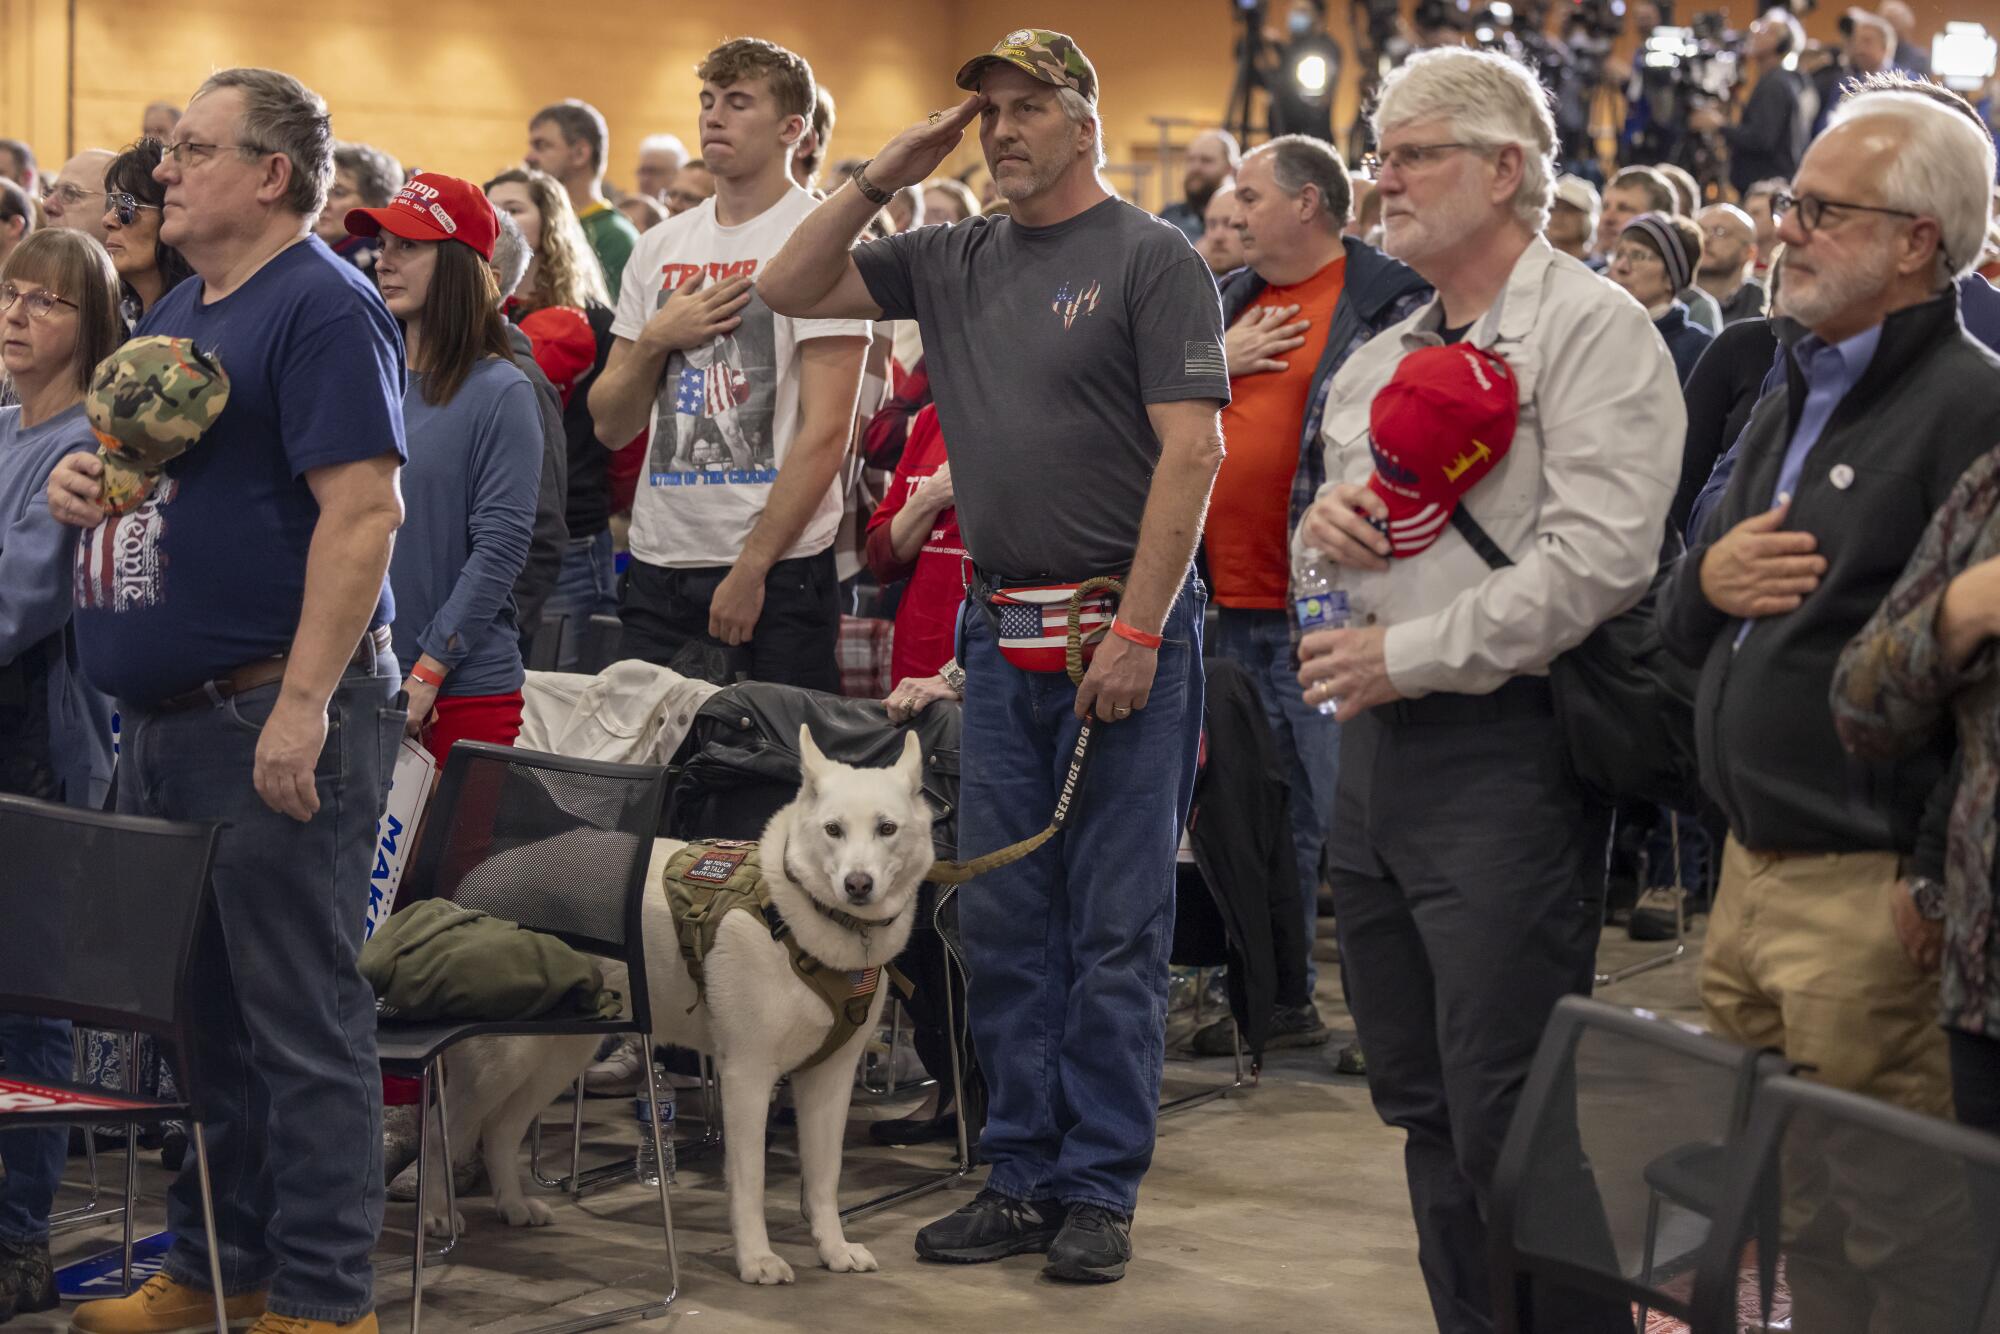 Uma multidão em pé, alguns com chapéus ou camisas Trump, a maioria com as mãos e chapéus no coração, enquanto um homem com um cachorro branco saúda